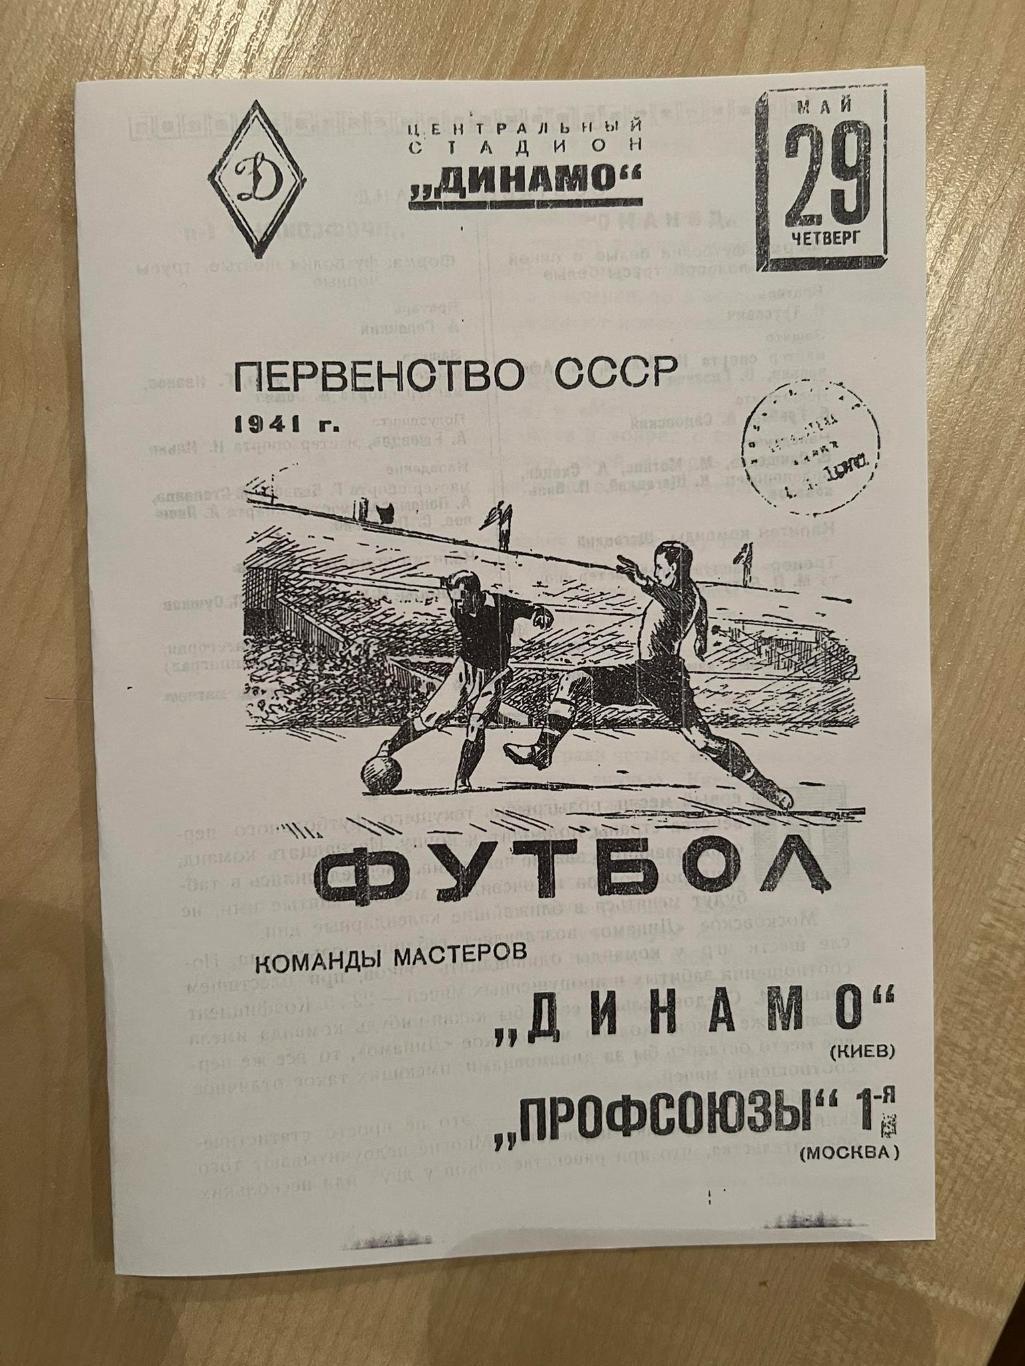 Профсоюзы-1 Москва - Динамо Киев 1941 копия